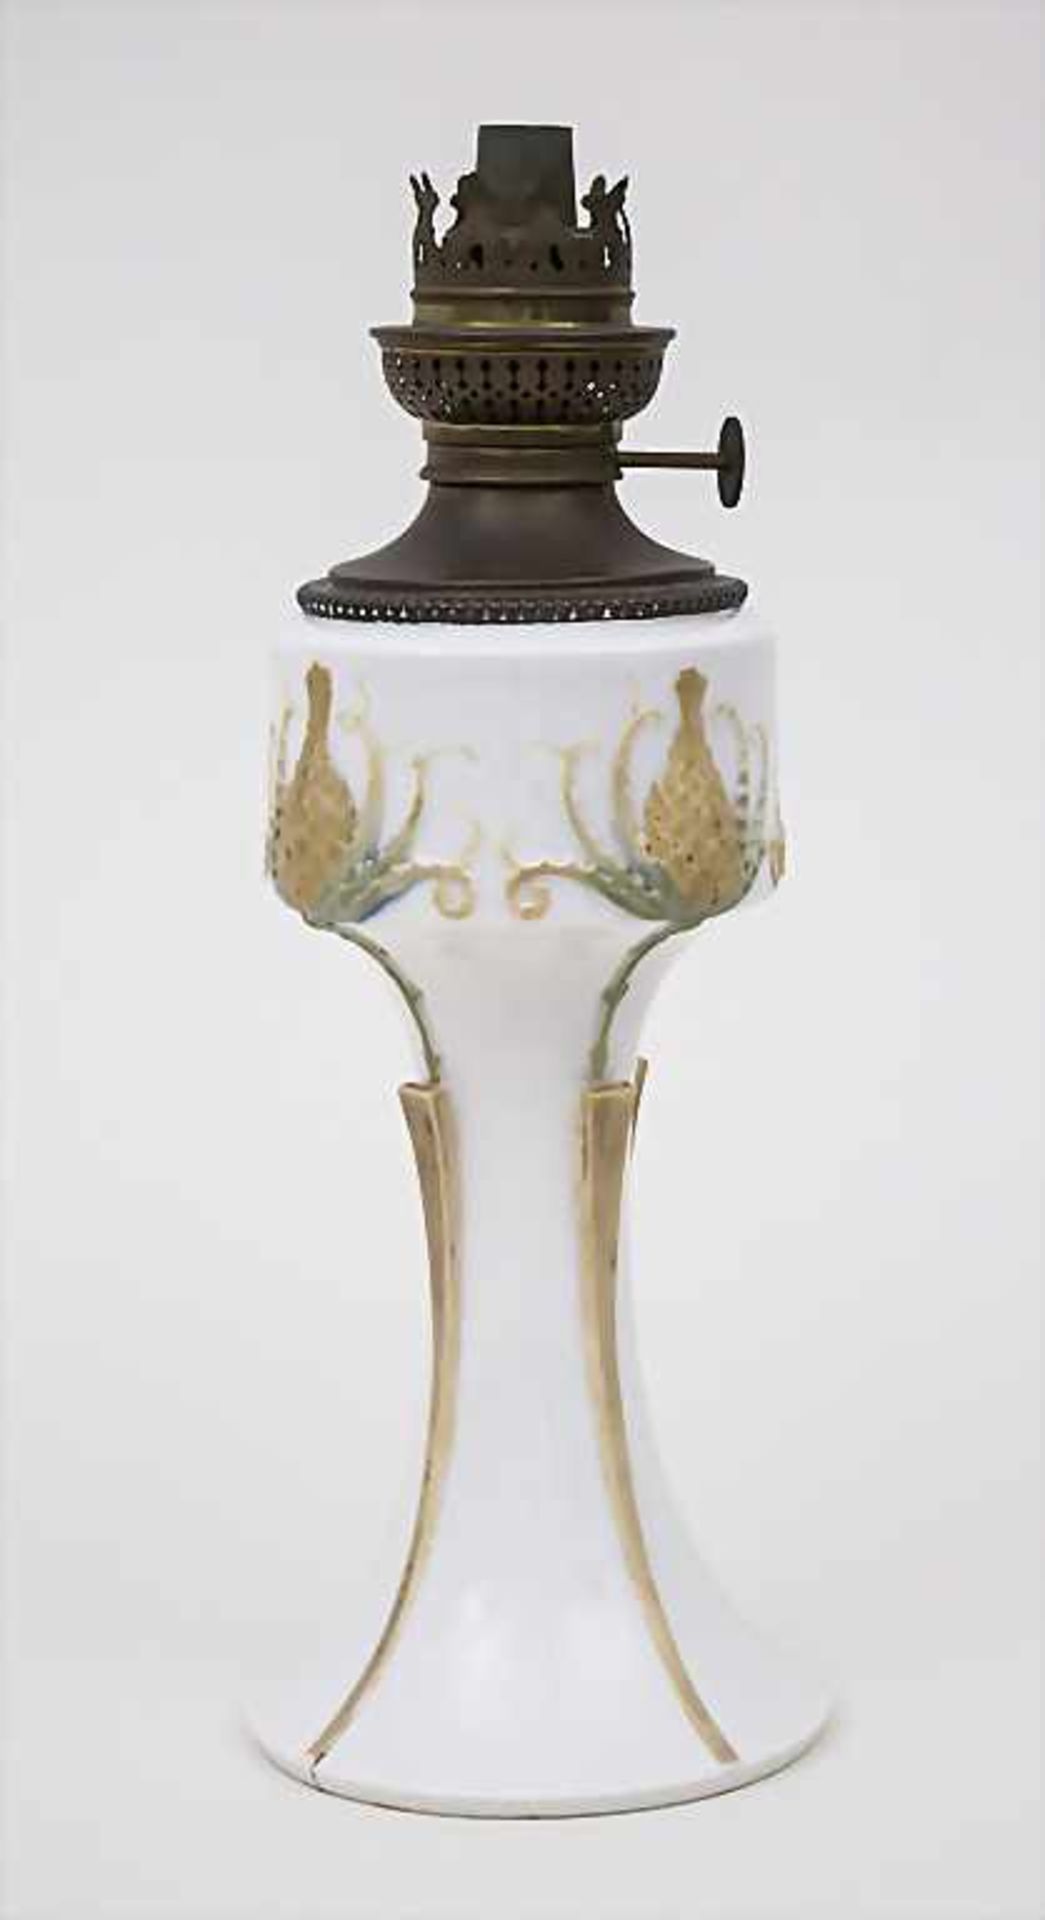 Jugendstil Petroleum Lampe 'Ciboire' (Distel) / An Art Nouveau Oil Lamp, Sèvres, 1904<